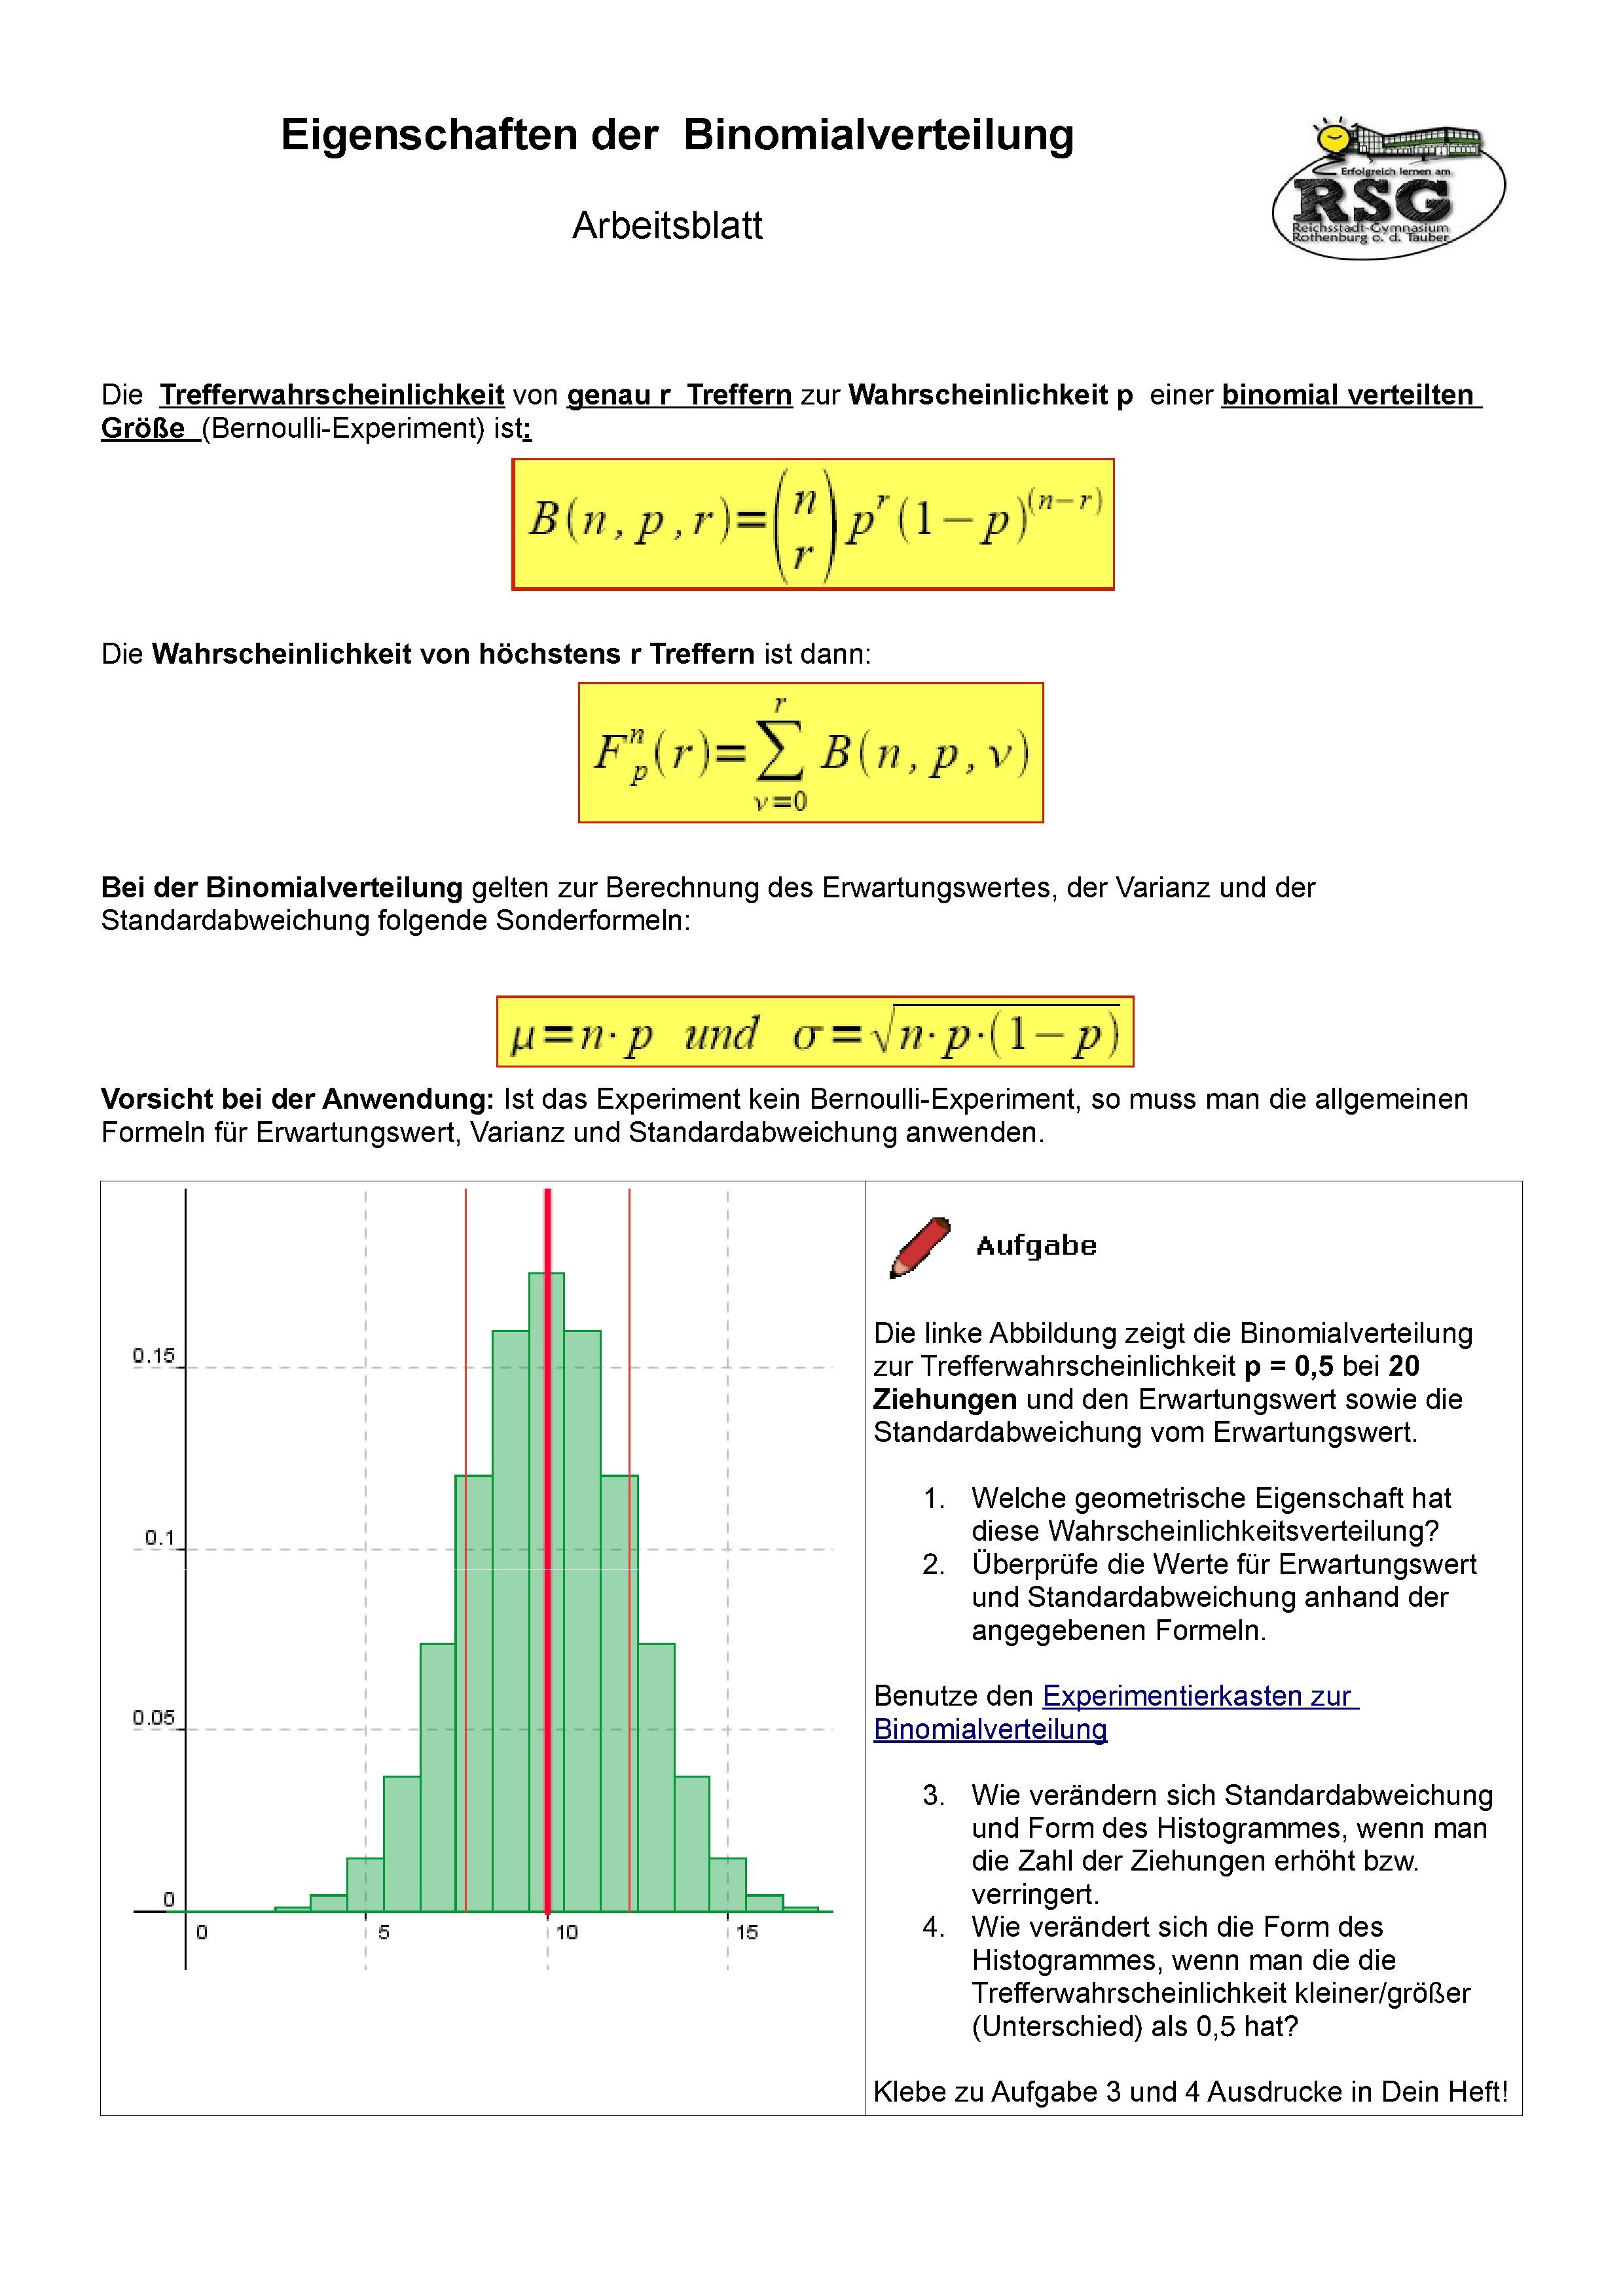 Binomialverteilung1.pdf